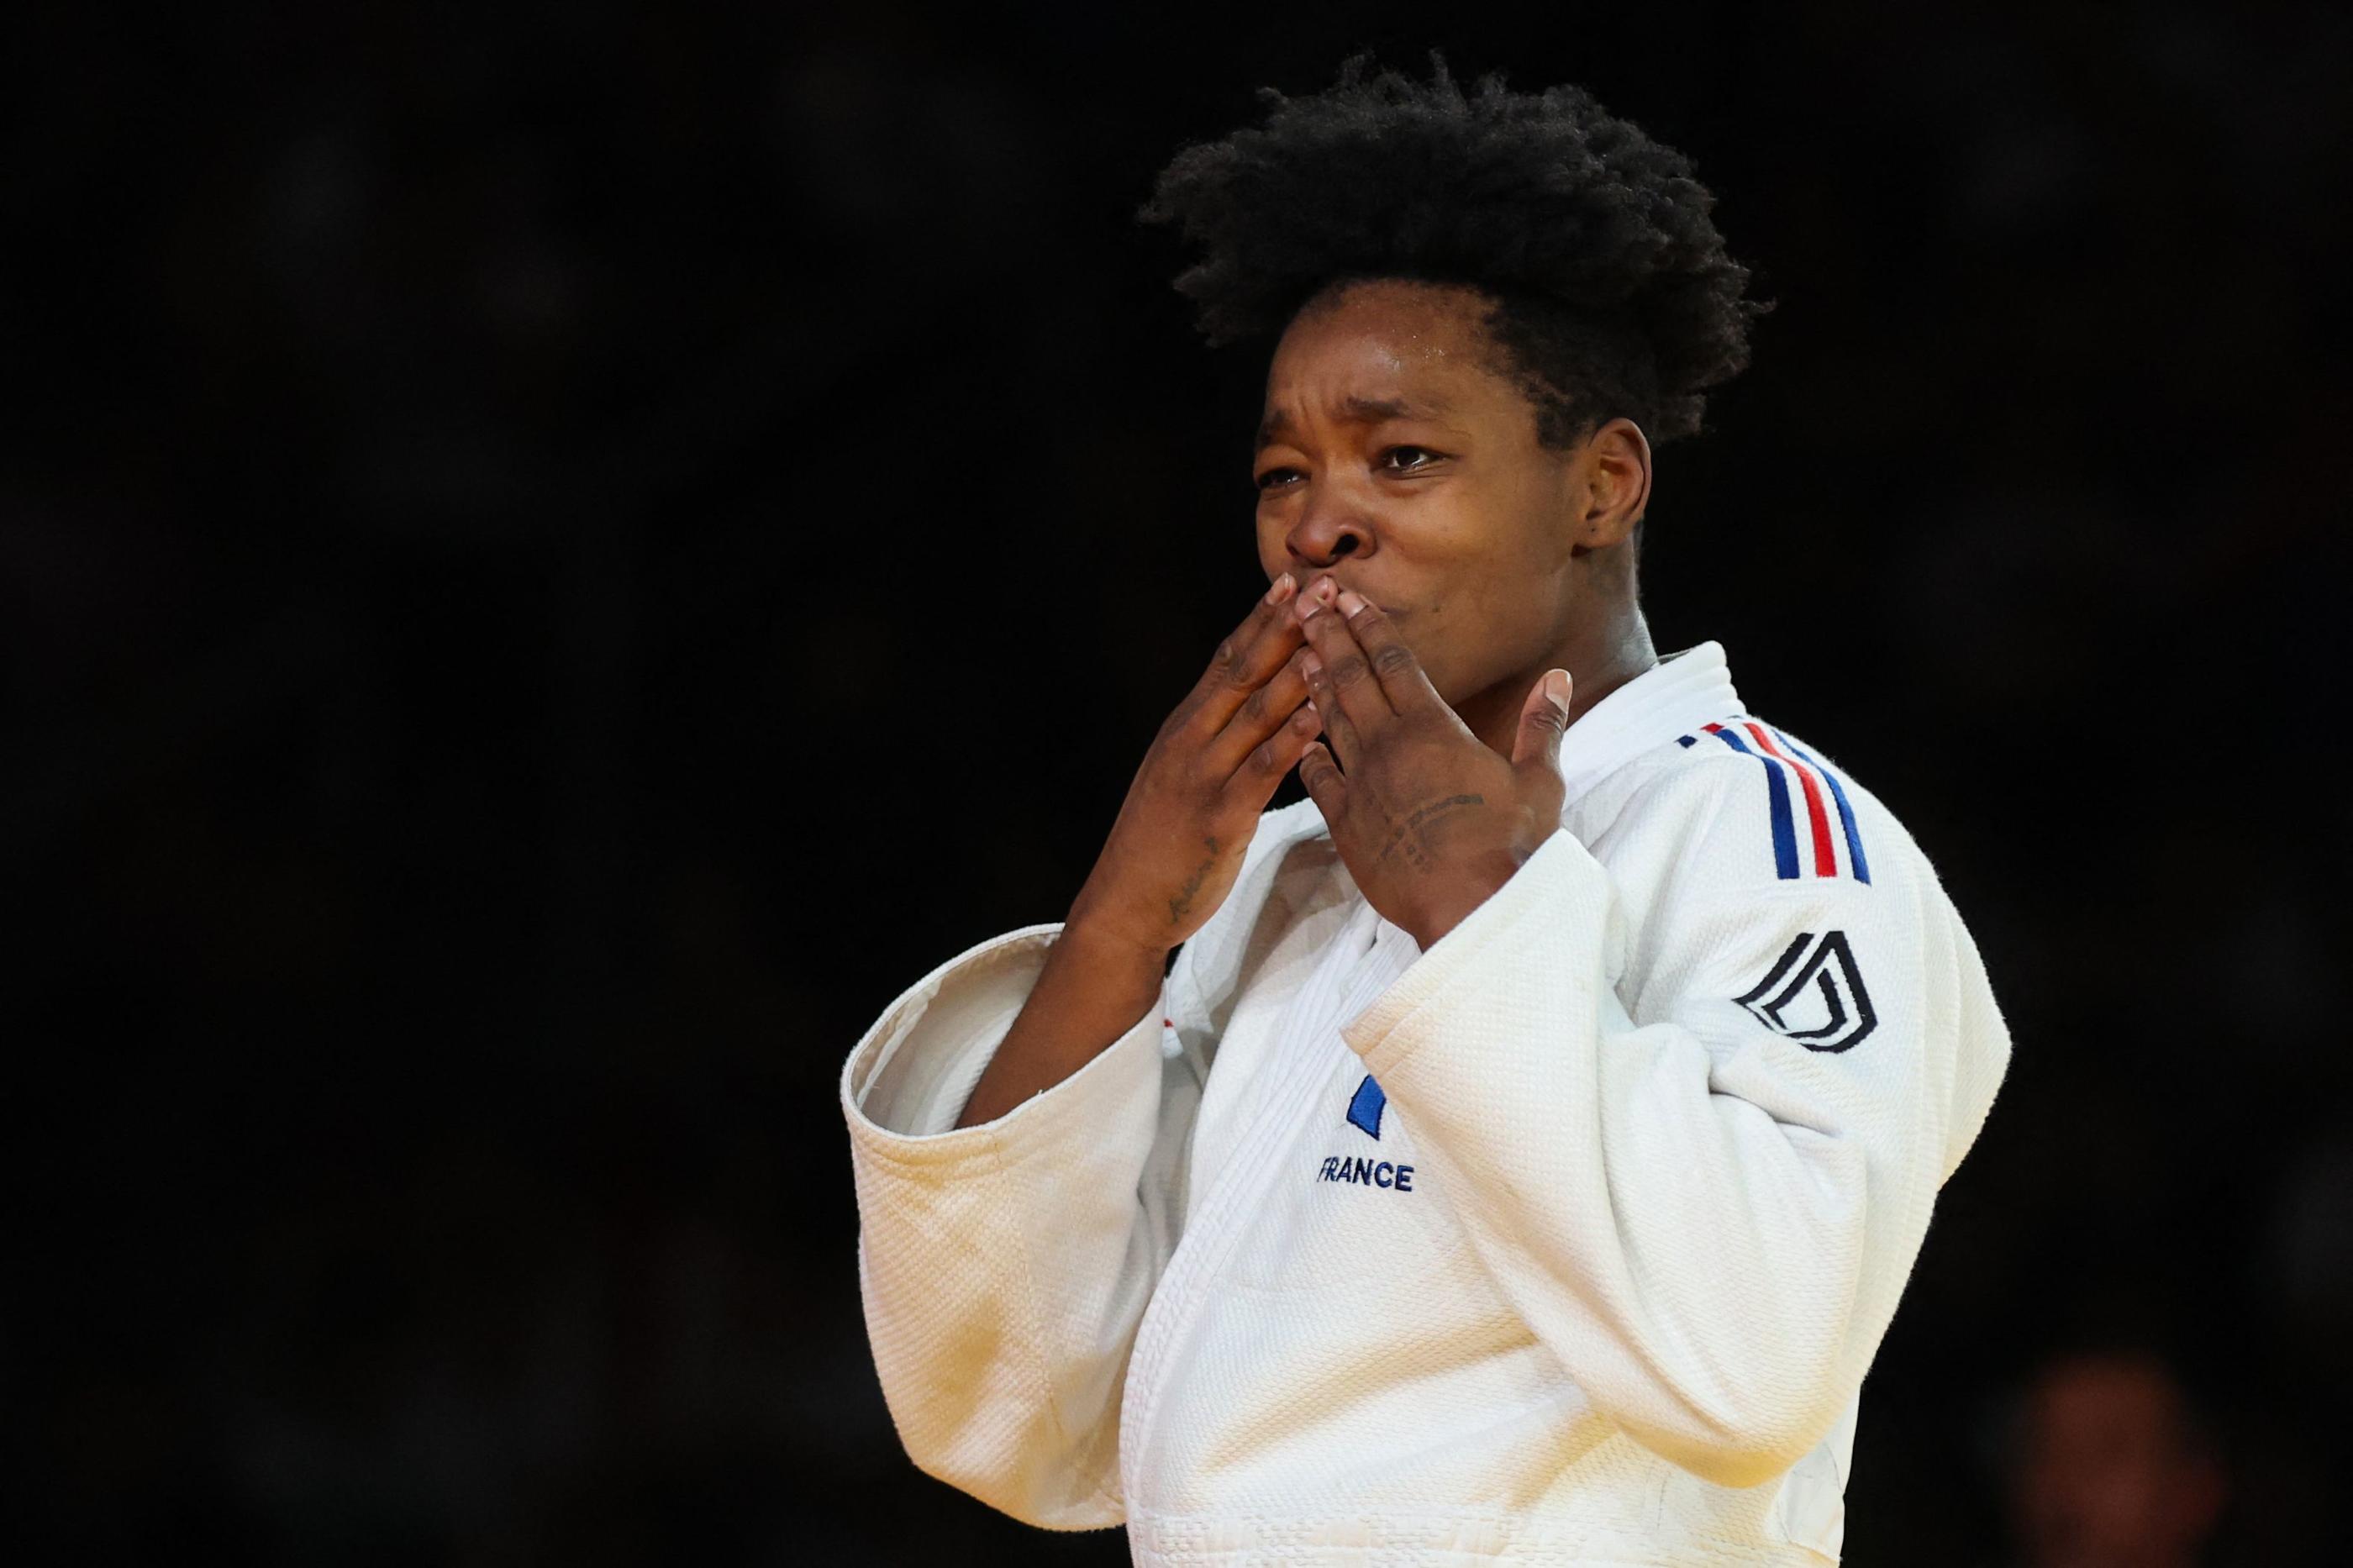 L'émotion d'Audrey Tcheuméo, sacrée championne d'Europe de judo pour la cinquième fois ce samedi. (Photo by Damir SENCAR / AFP)